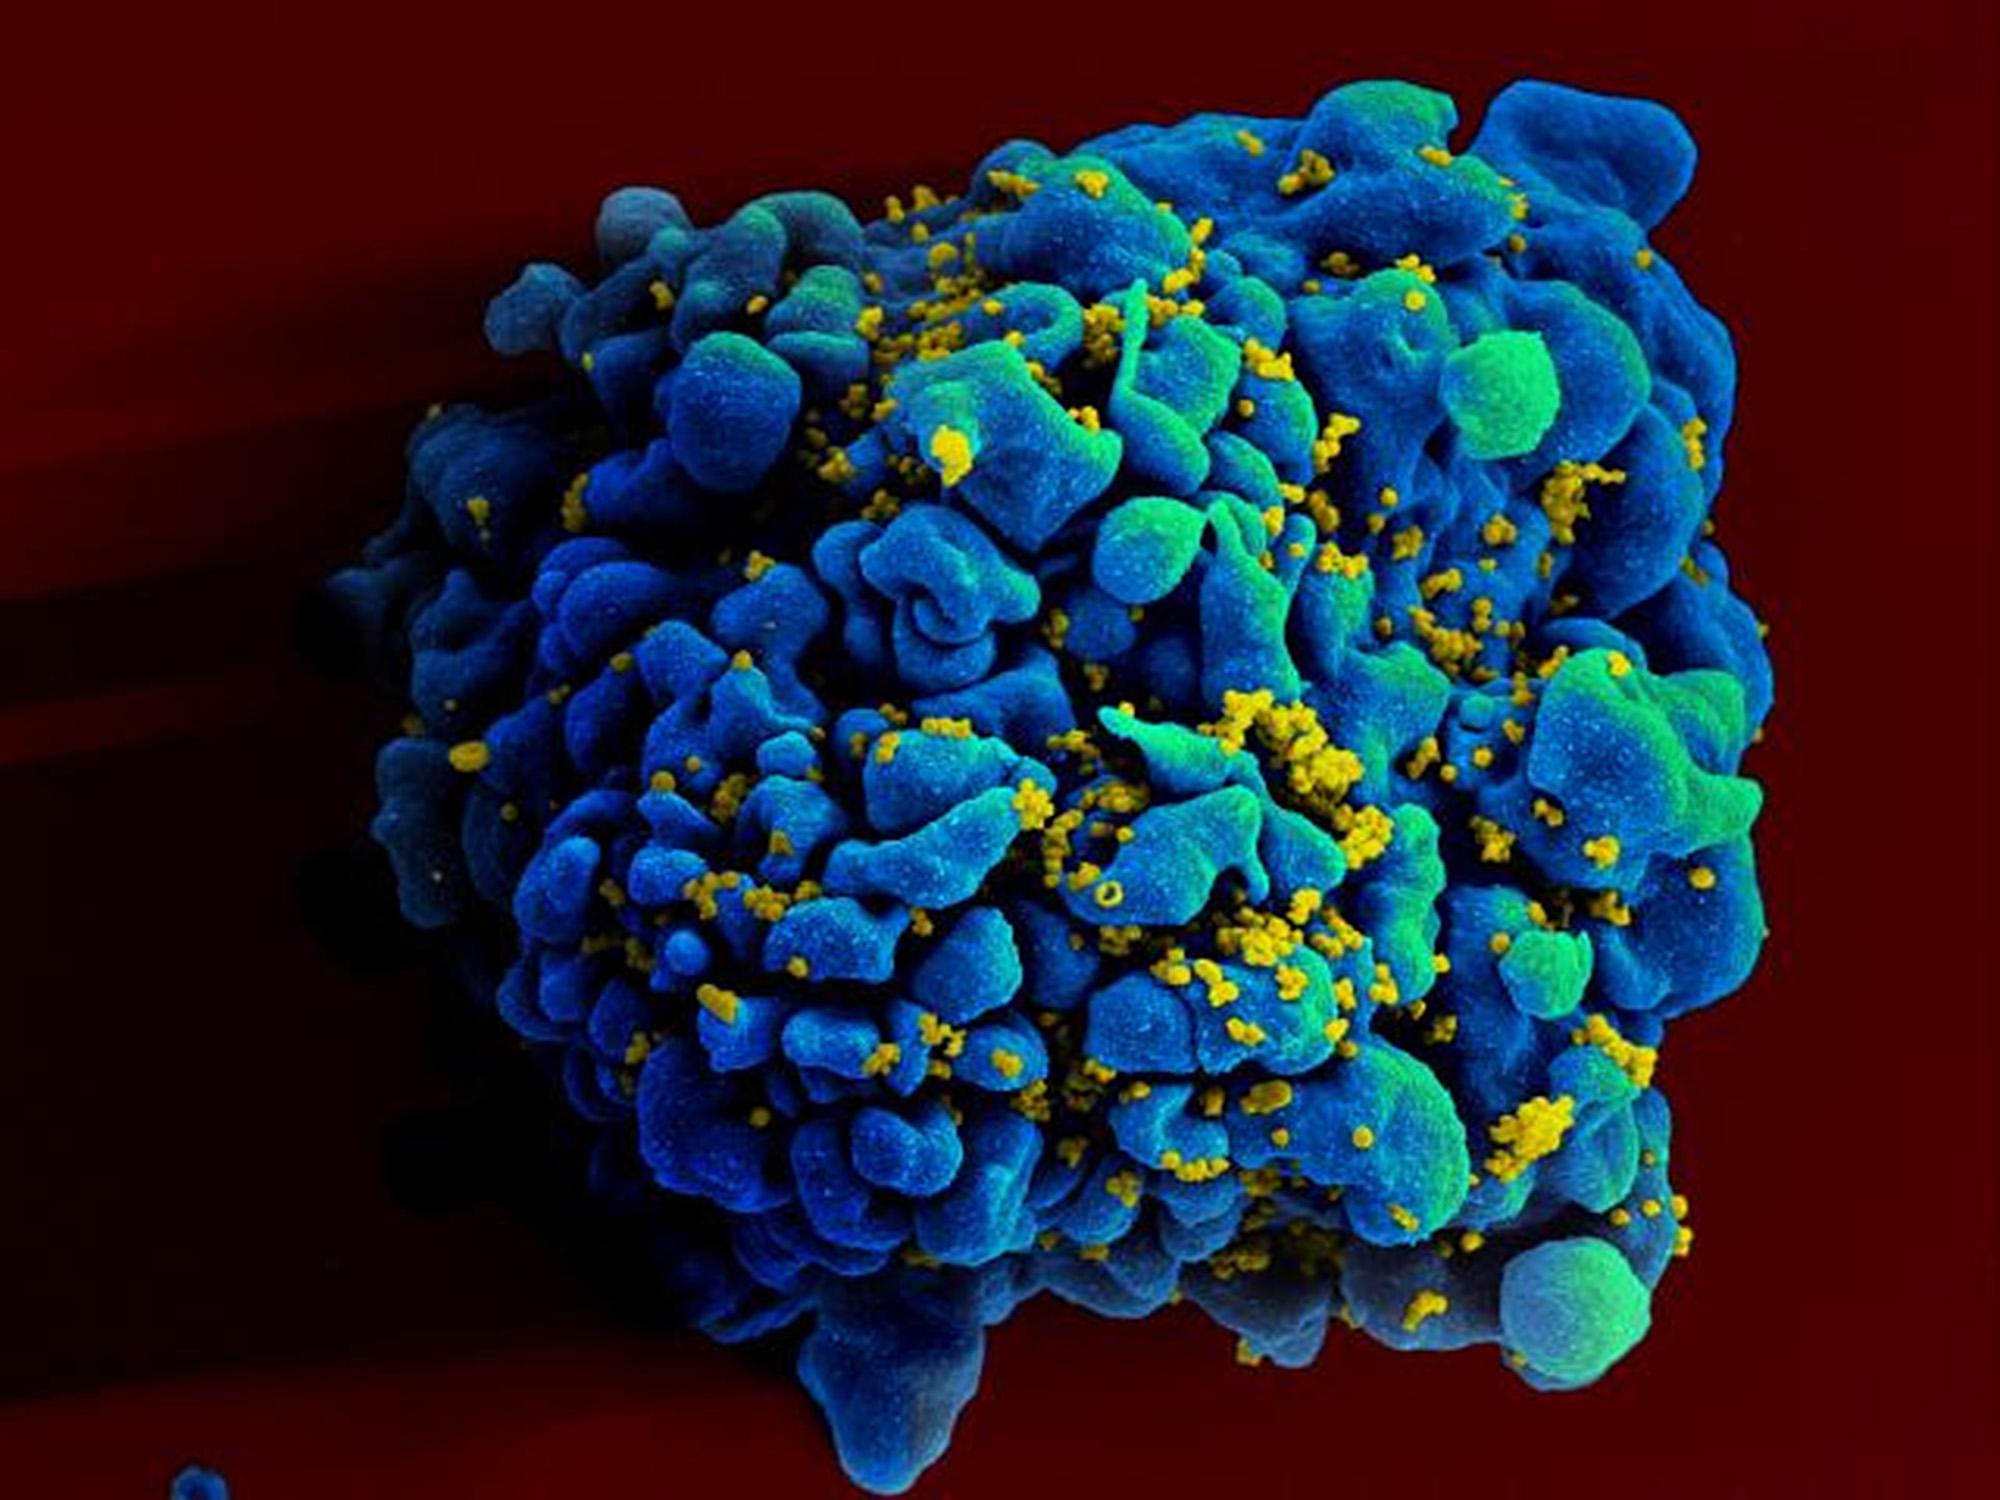 Novas descobertas sobre o raro vírus Chapare preocupam pesquisadores